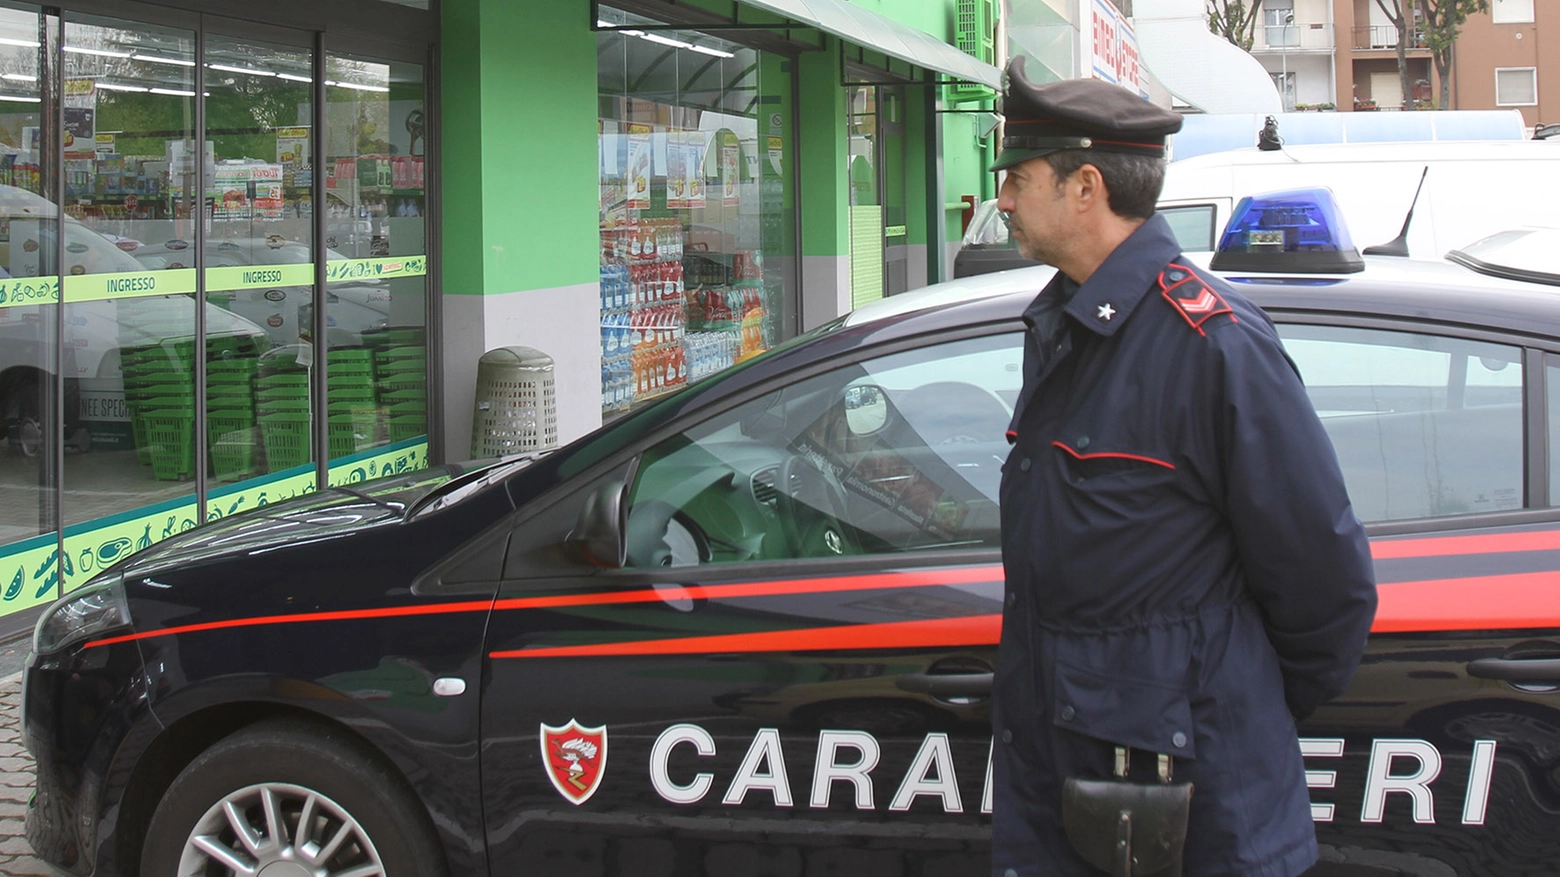 Le indagini sono state condotte dai carabinieri (foto d'archivio)